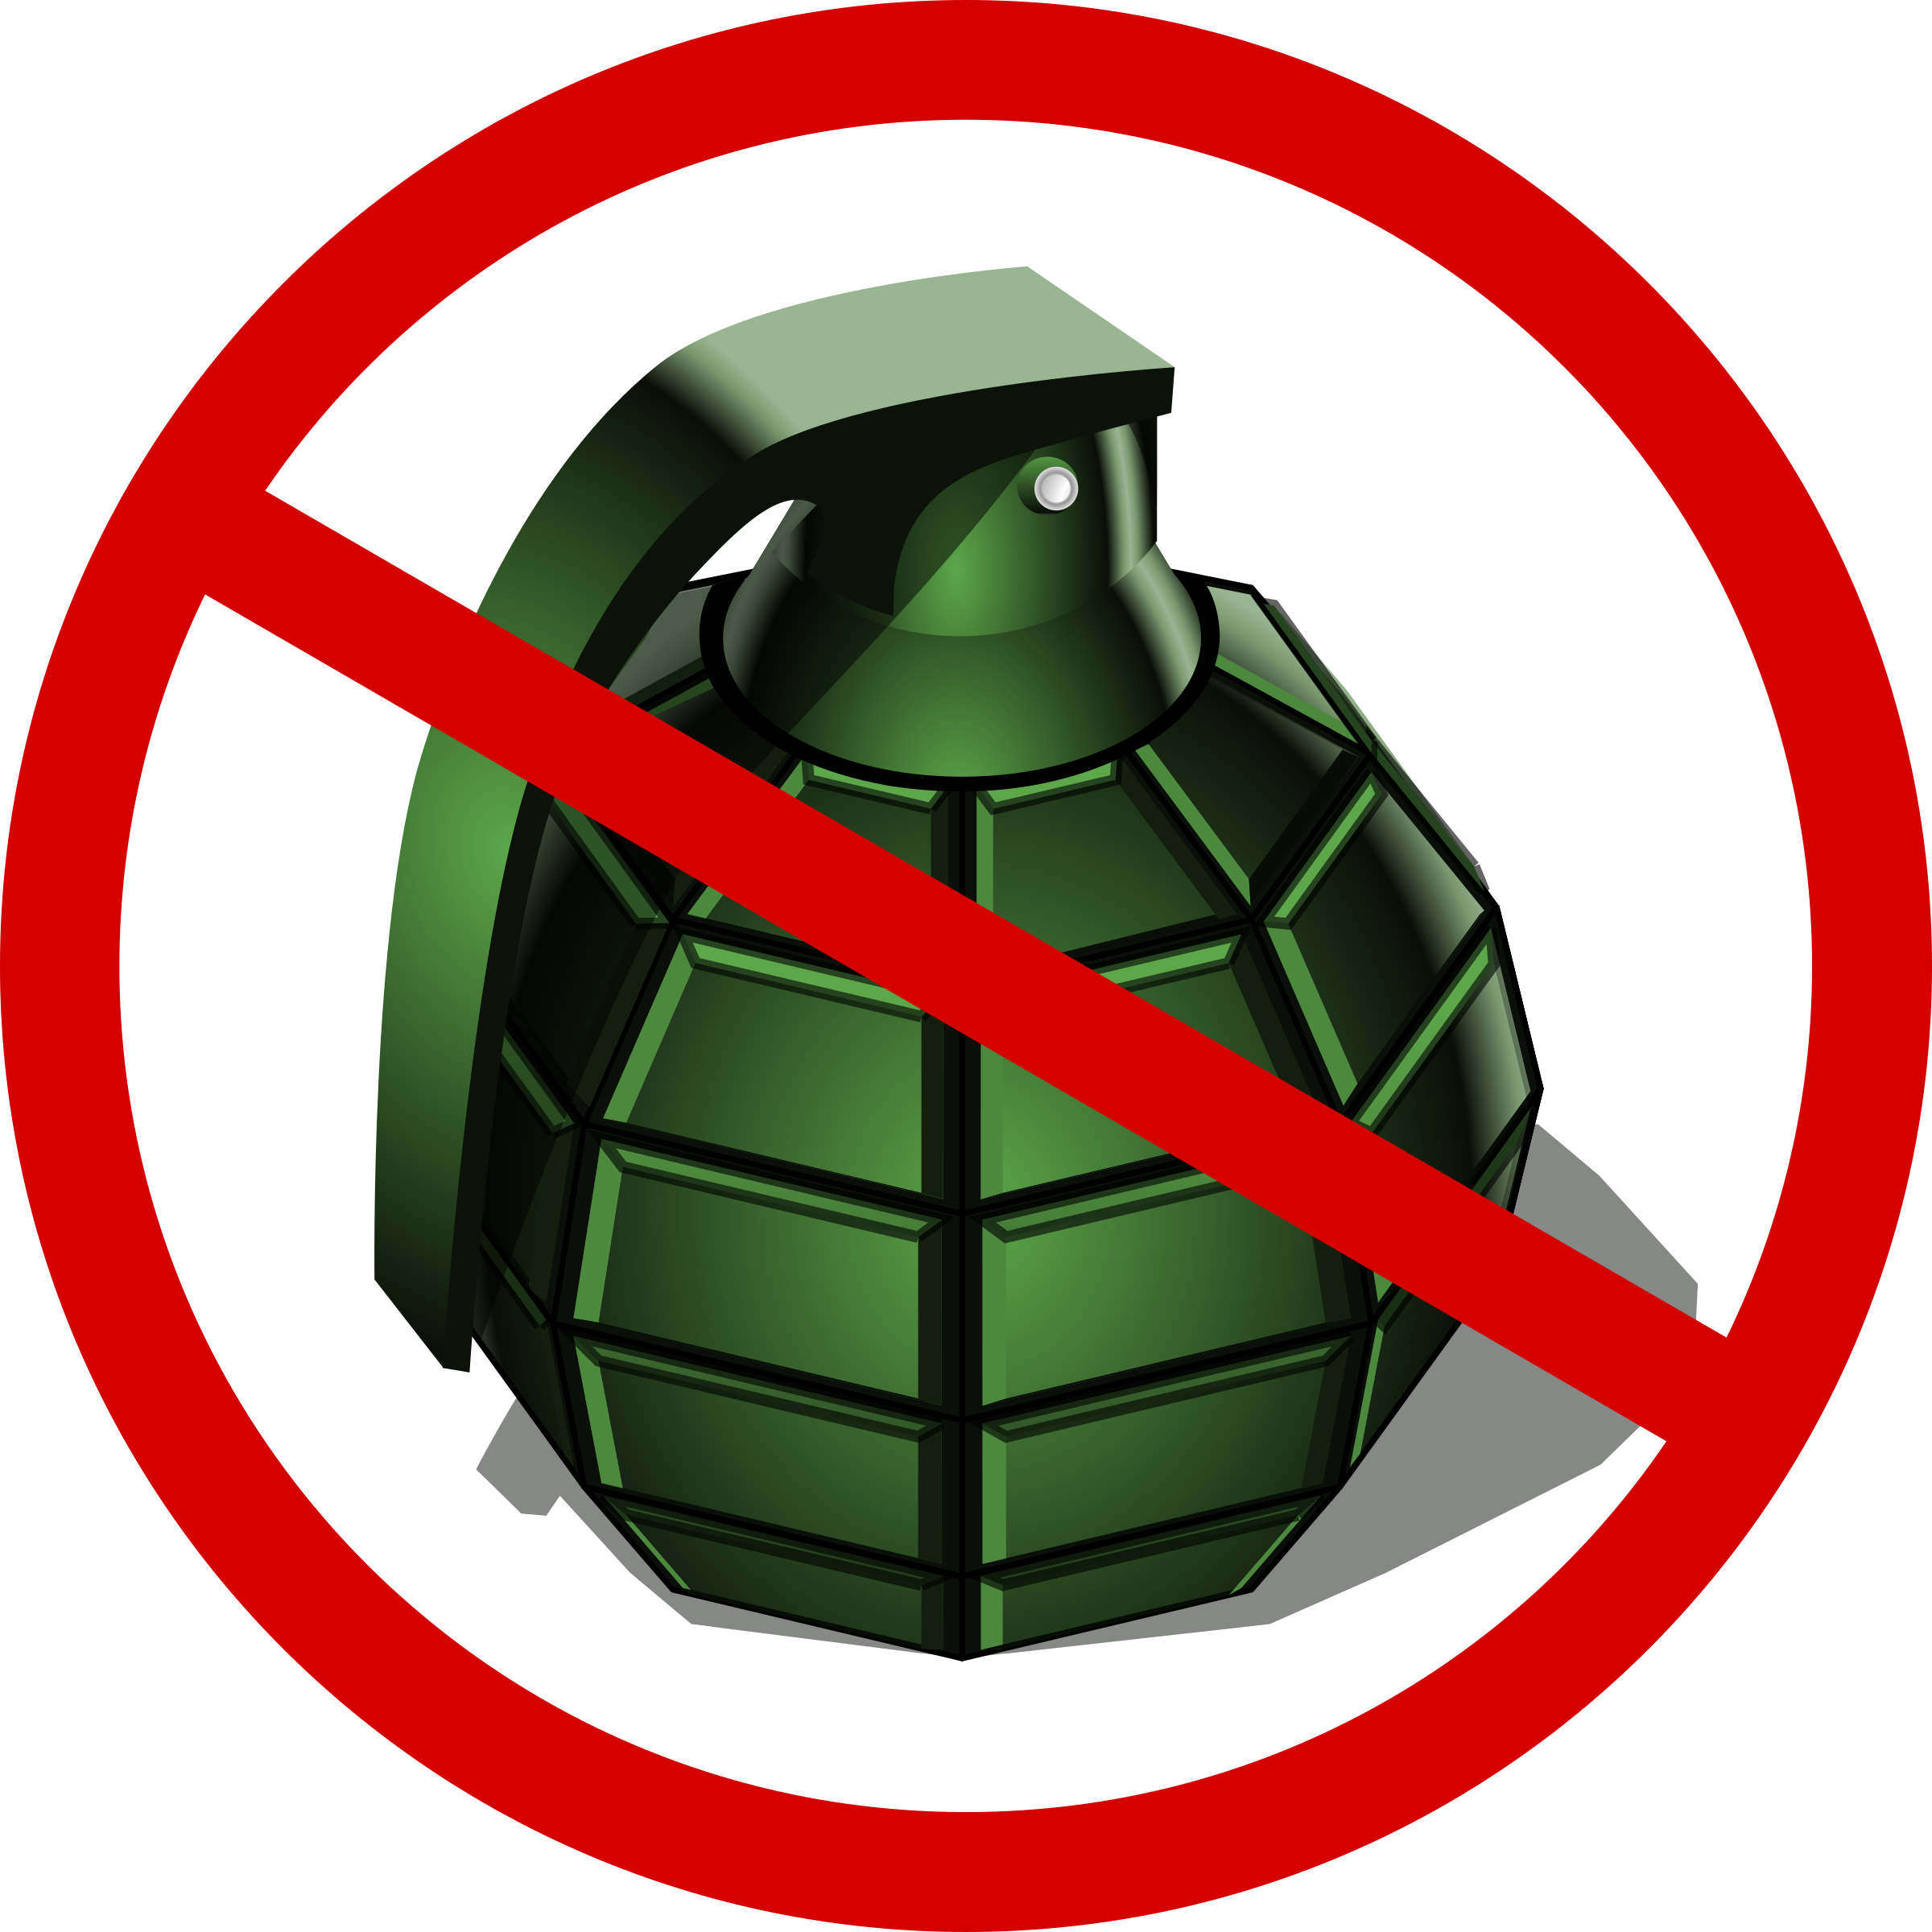 Clipart - no grenades